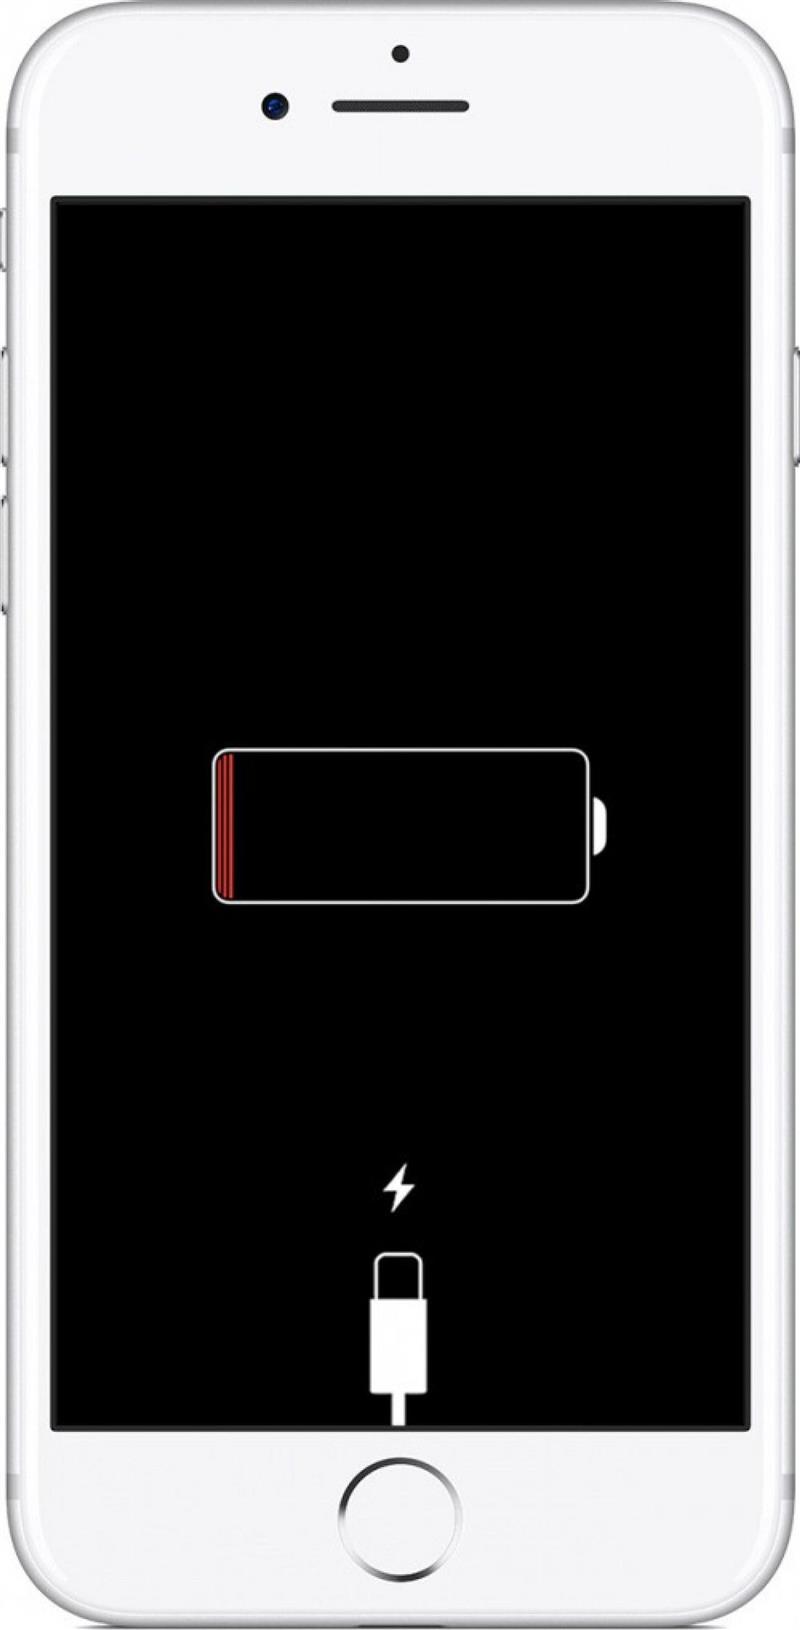 Éliminez la possibilité d'une batterie déchargée en branchant votre téléphone pour voir s'il se charge. Vous pouvez également essayer un autre chargeur au cas où votre chargeur principal ou votre câble serait cassé.